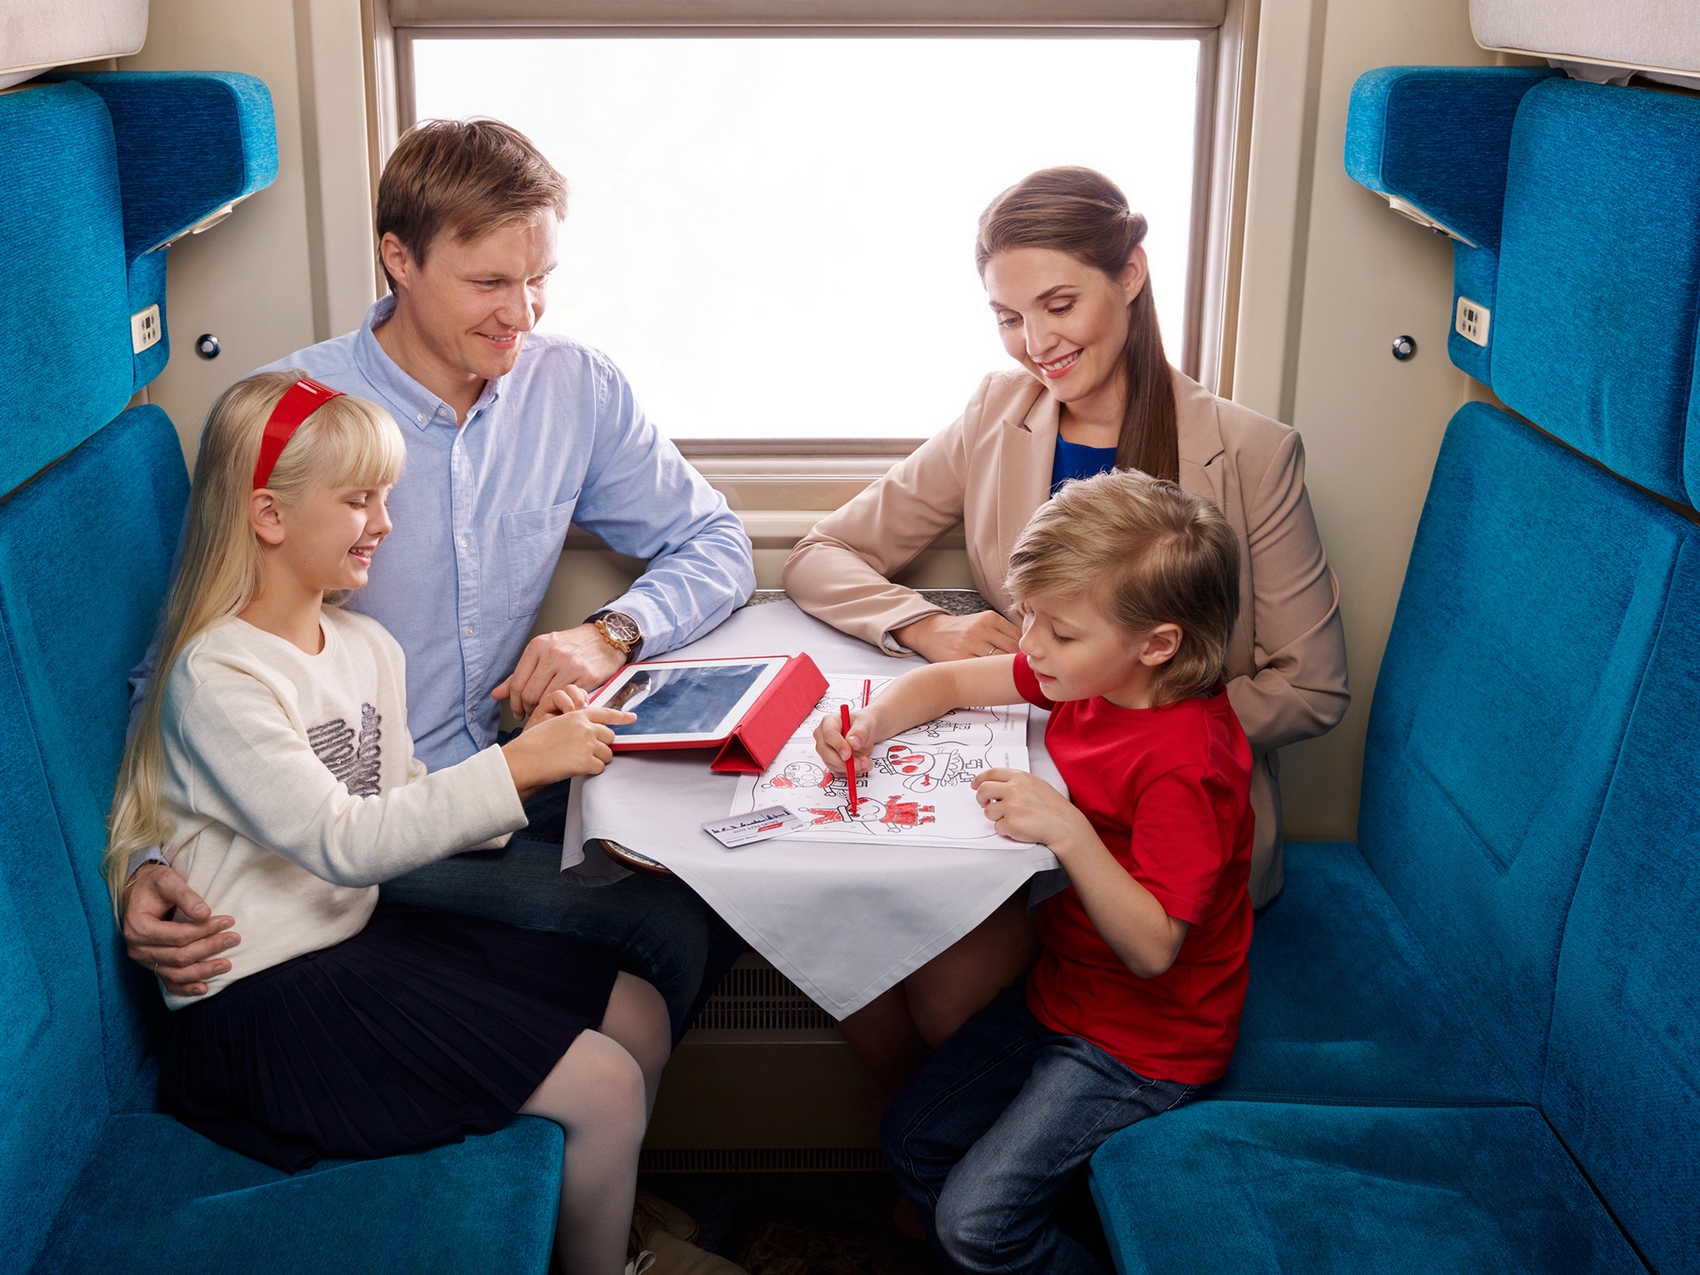 Скидки на жд билеты многодетным семьям. Путешествие на поезде семьей. Поезда для детей. Пассажиры в поезде. Путешествие с детьми на поезде.